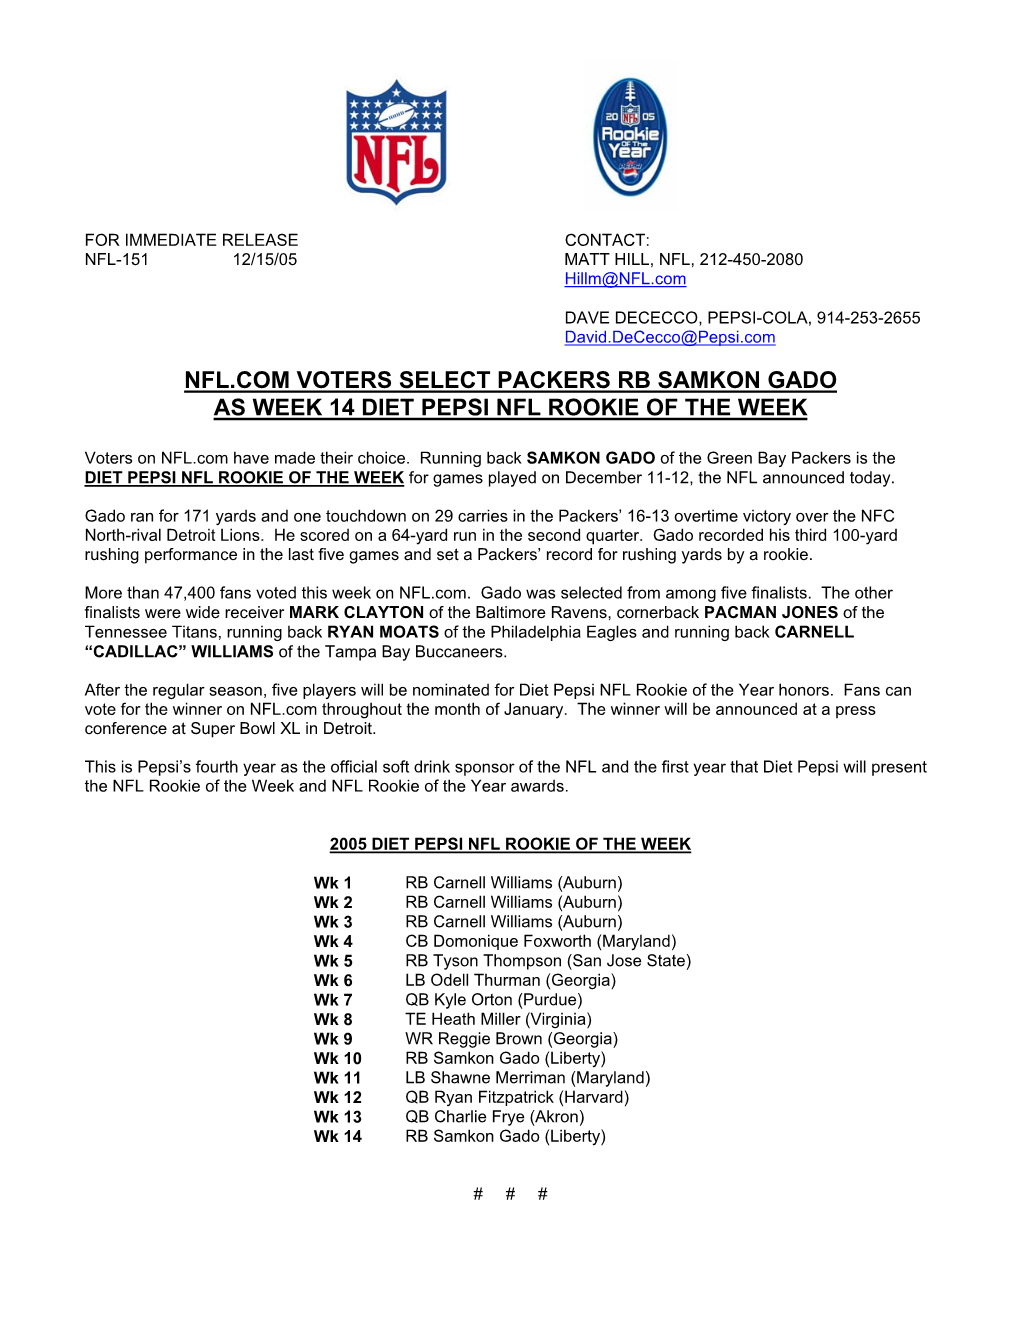 Nfl.Com Voters Select Packers Rb Samkon Gado As Week 14 Diet Pepsi Nfl Rookie of the Week